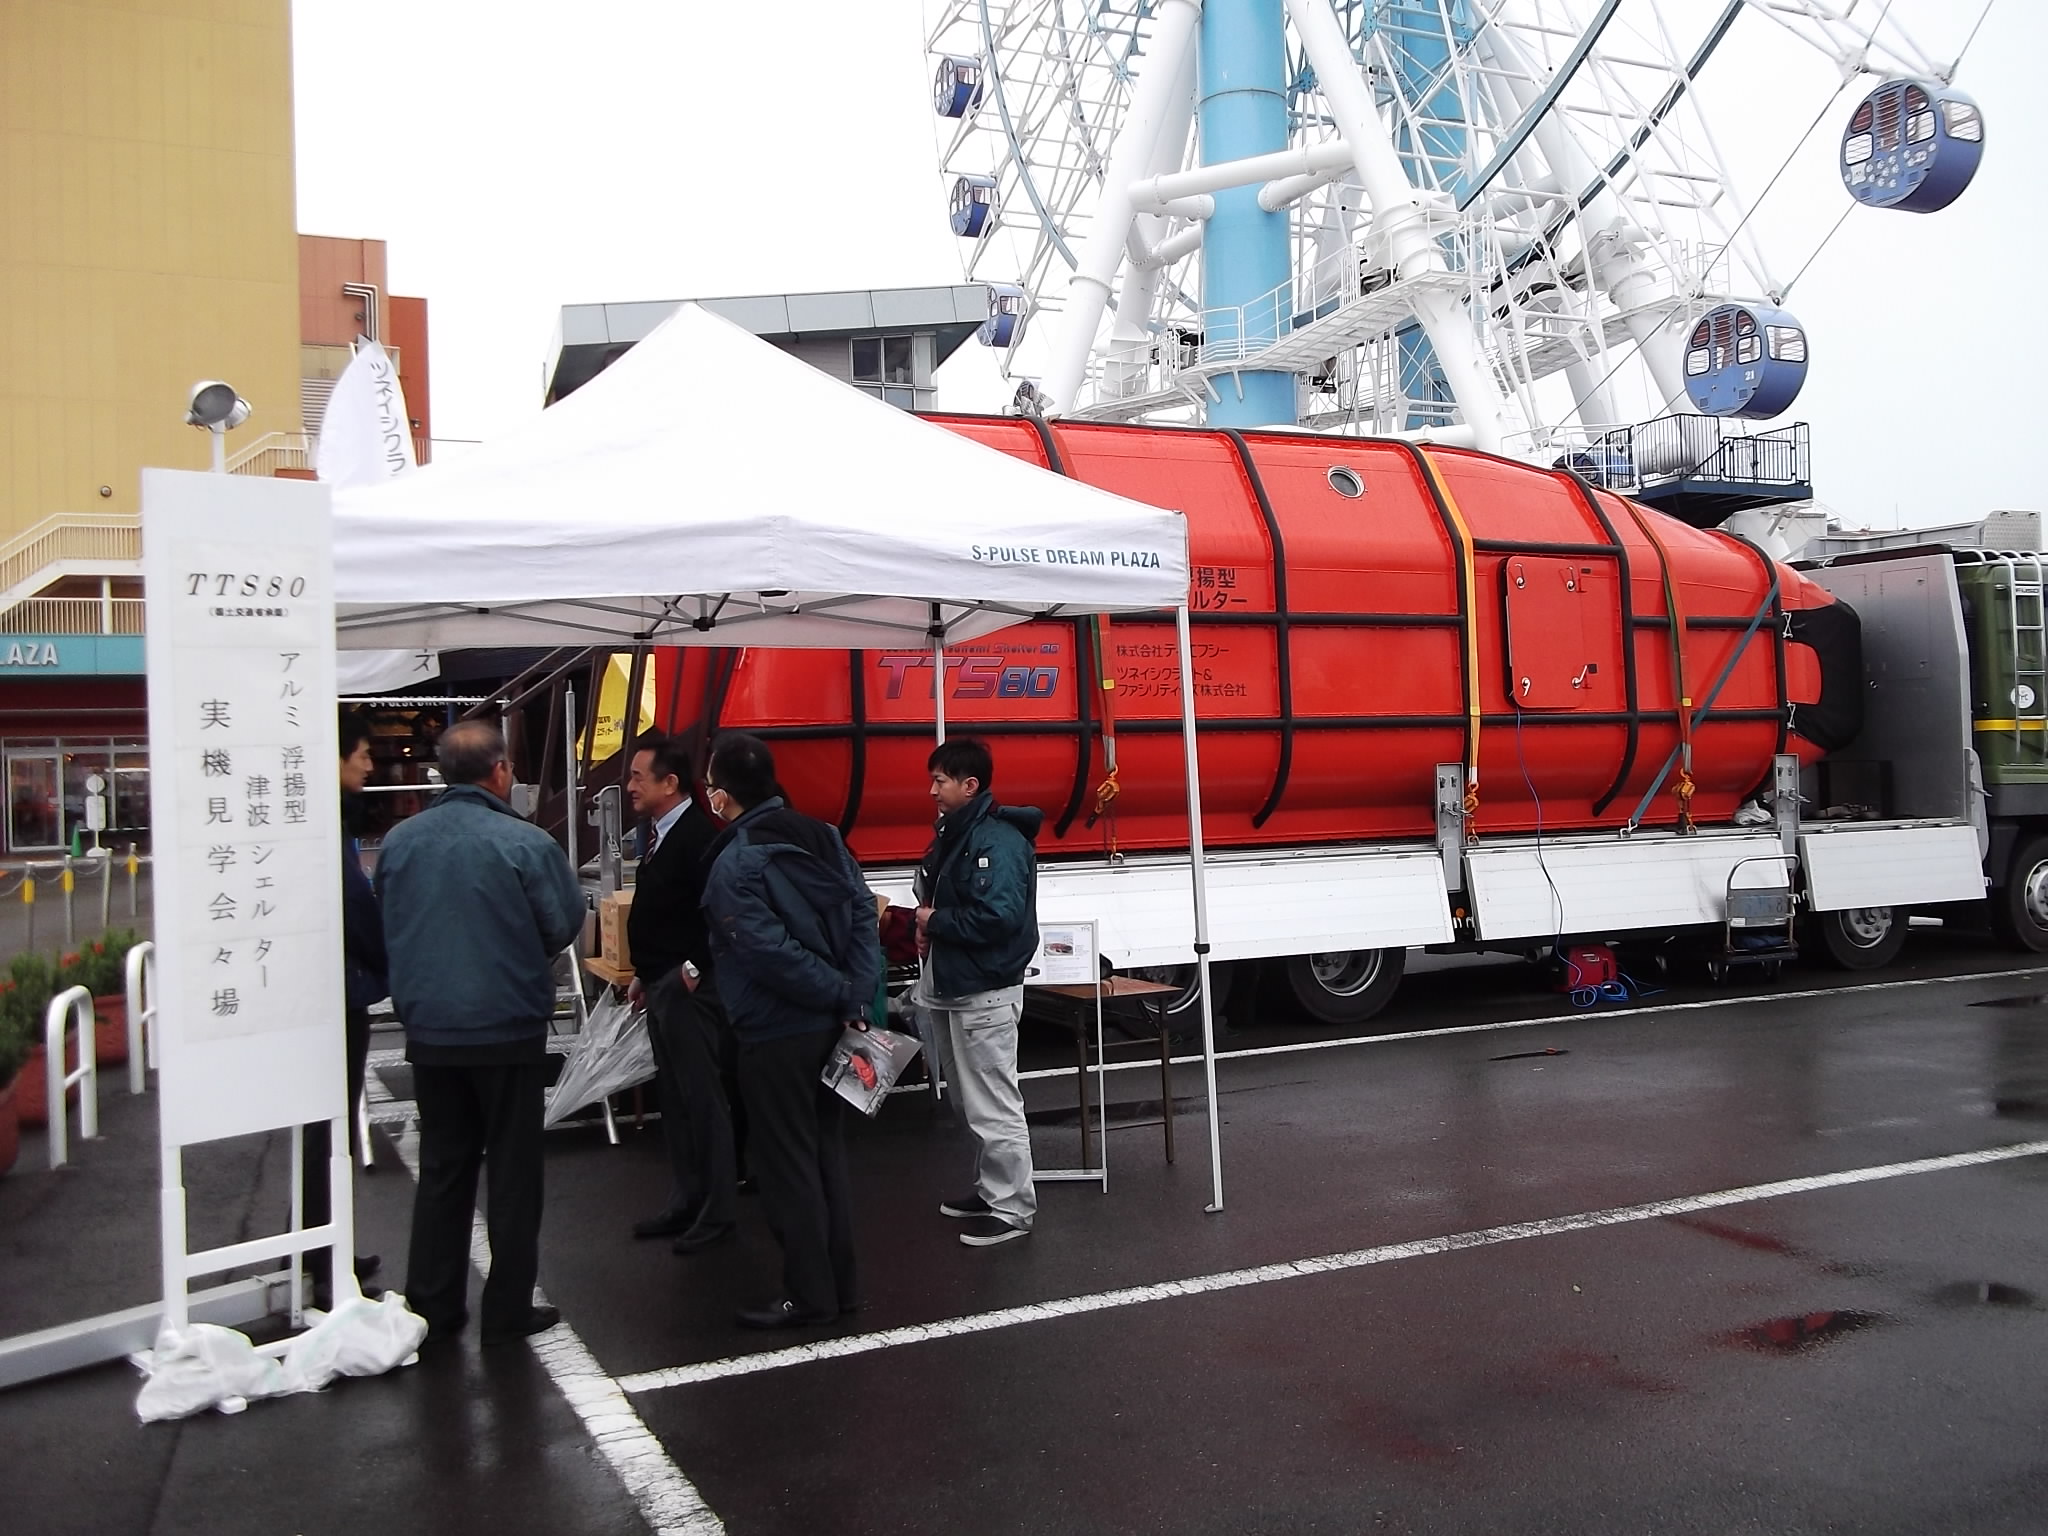 ツネイシクラフト＆ファシリティーズが開発した、アルミ浮揚型津波シェルター「TTS80」各地で展示会を開催